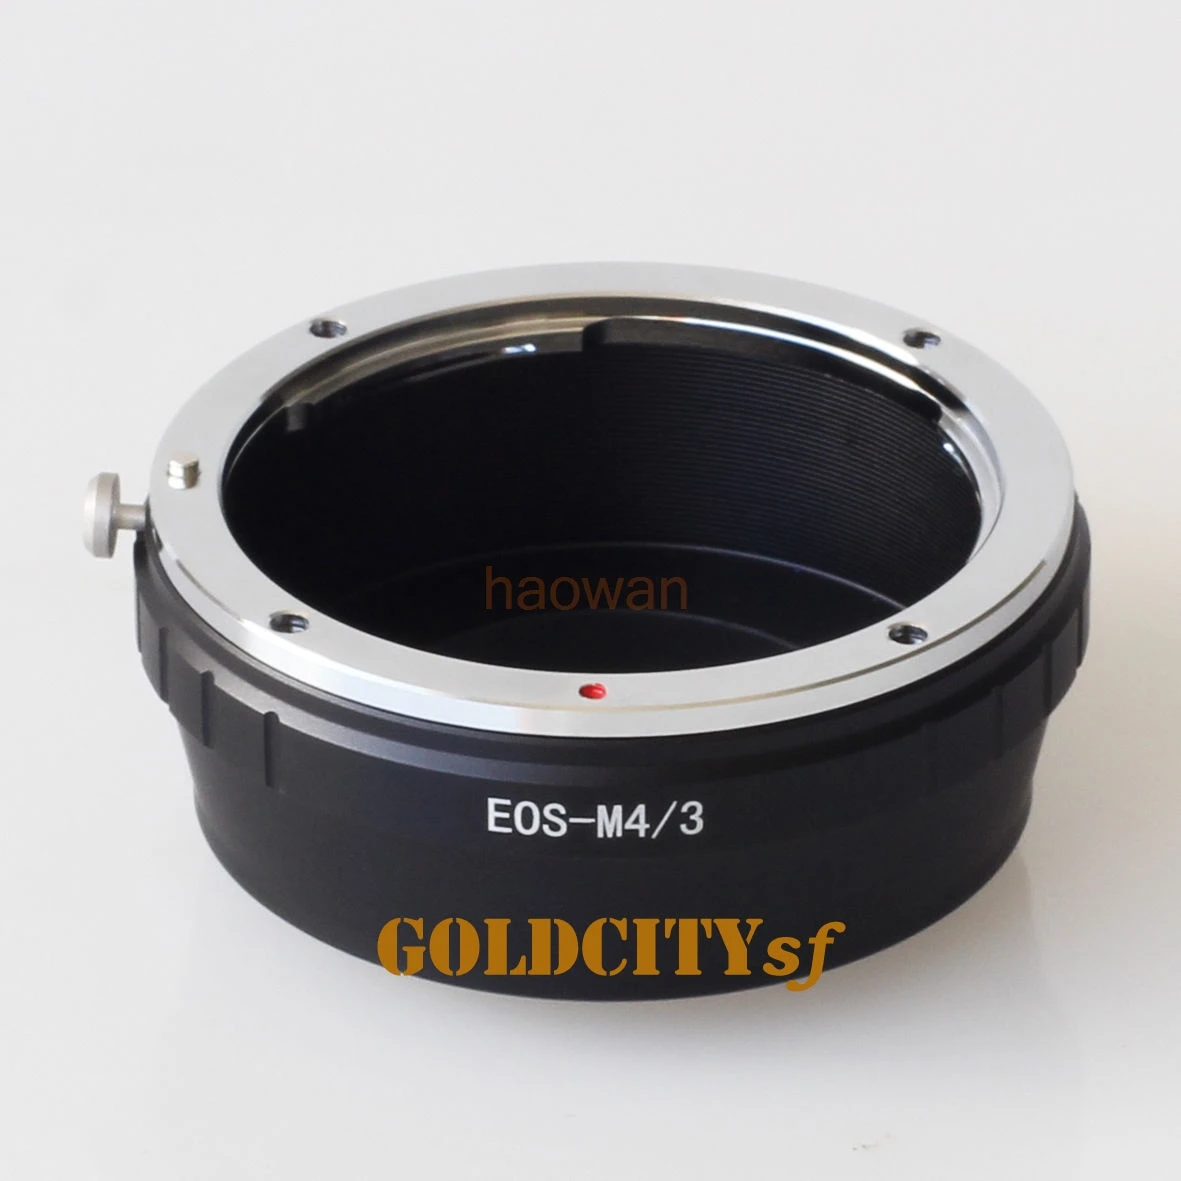 

Adapter ring for canon eos Lens to panasonic olympus M43 Panasonic G1 G3 GH1 gh4 GF1 GF3 gf5 E-P1 E-PL3 EPL5 EM5 EM1 EM10 camera